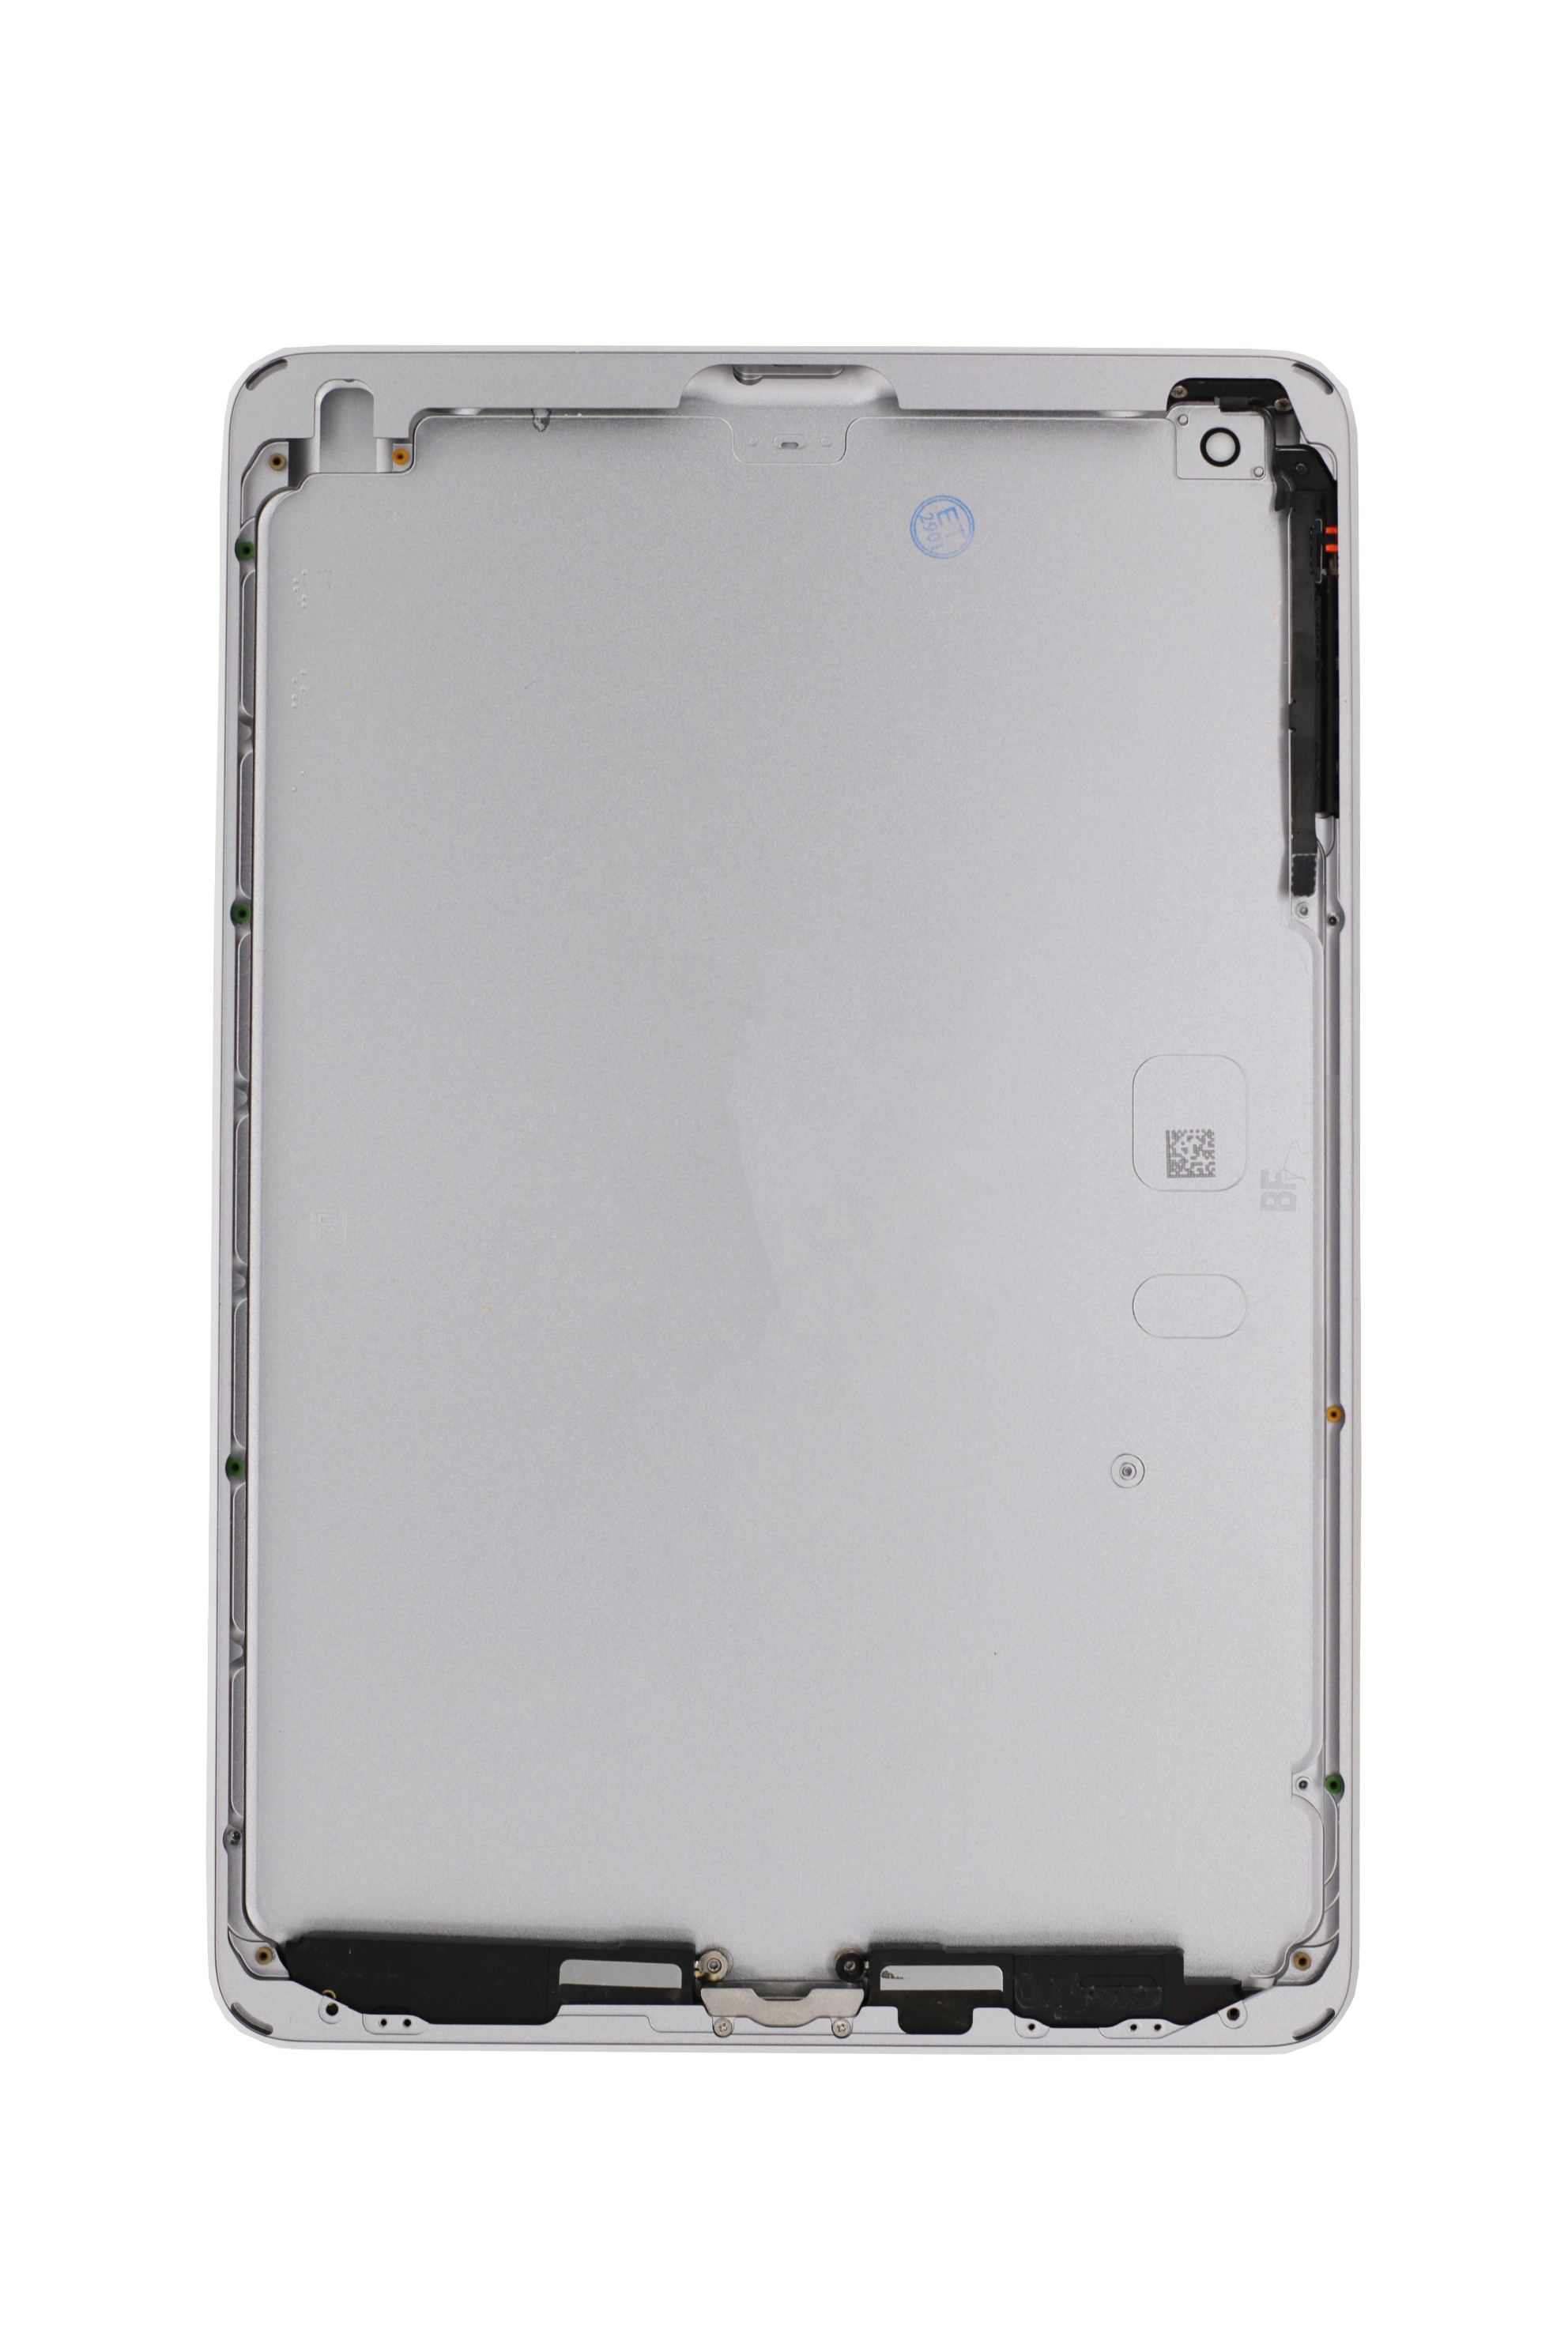 iPad Mini 3 Aluminum Back Casing Black (w/small parts, no charging